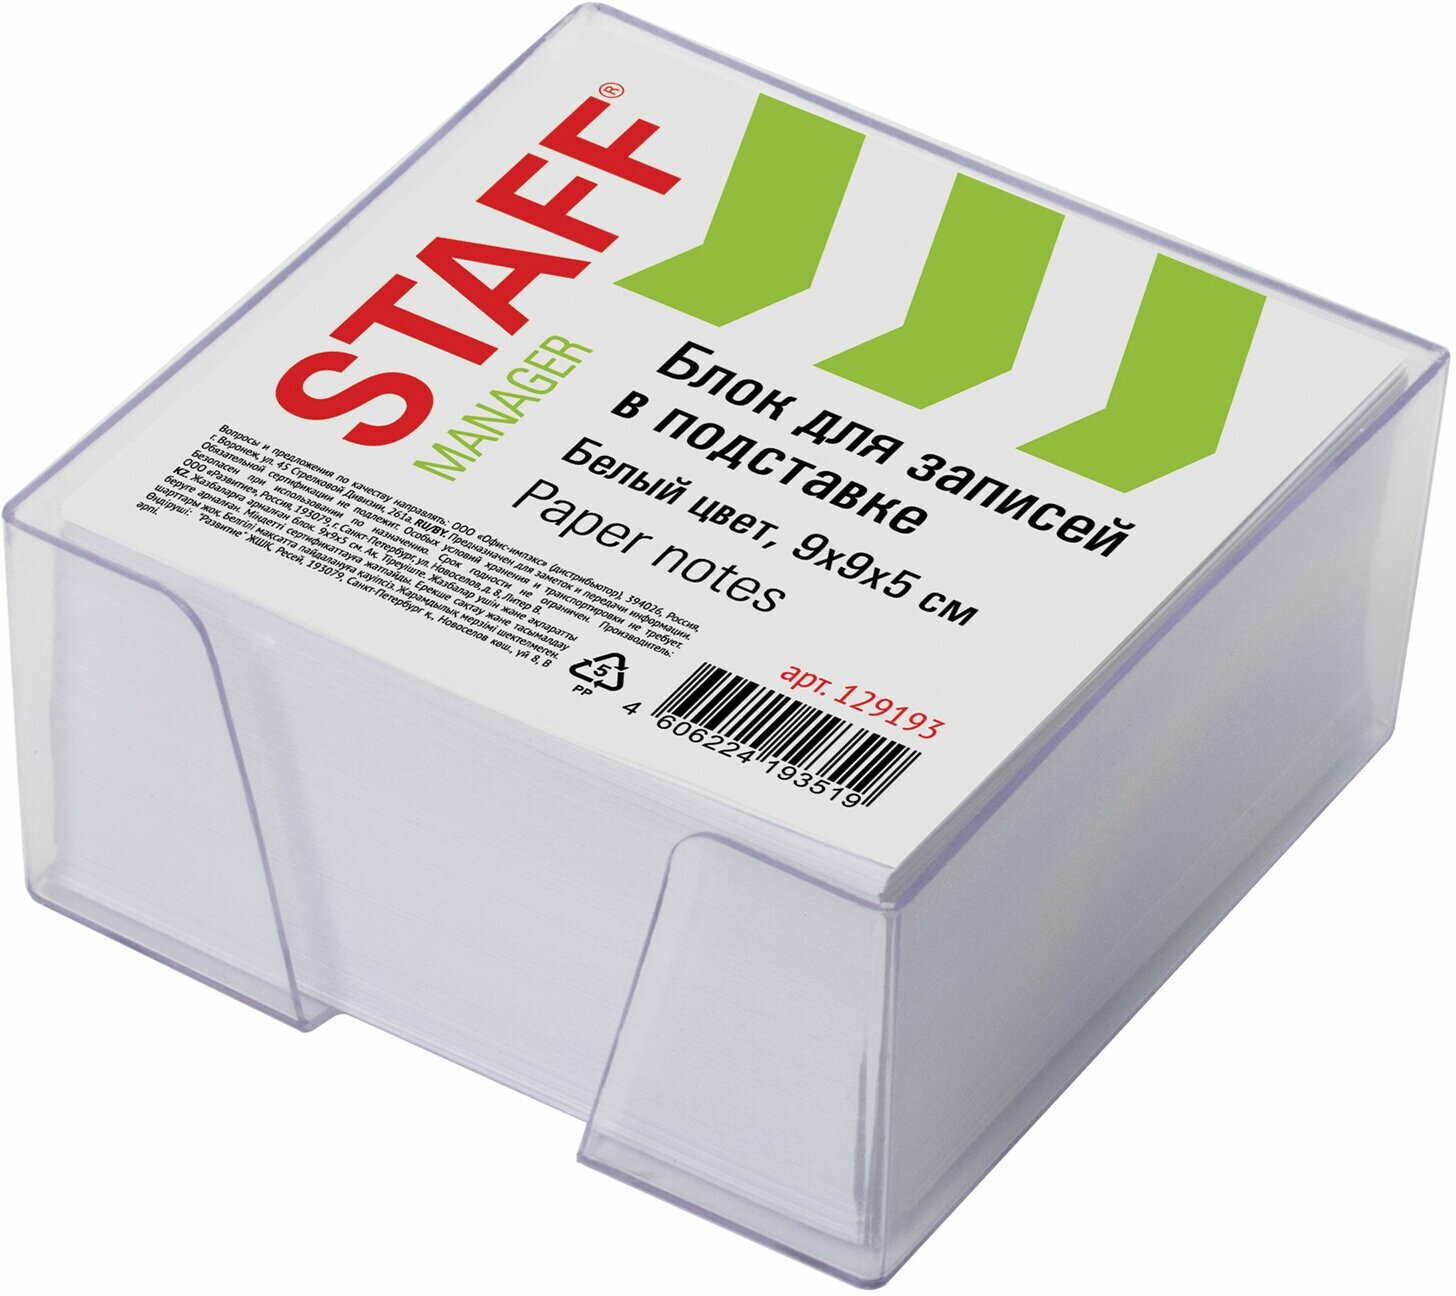 Блок для записей STAFF в подставке прозрачной, куб 9*9*5 см, белый, белизна 90-92%, 129193, - Комплект 5 шт.(компл.)